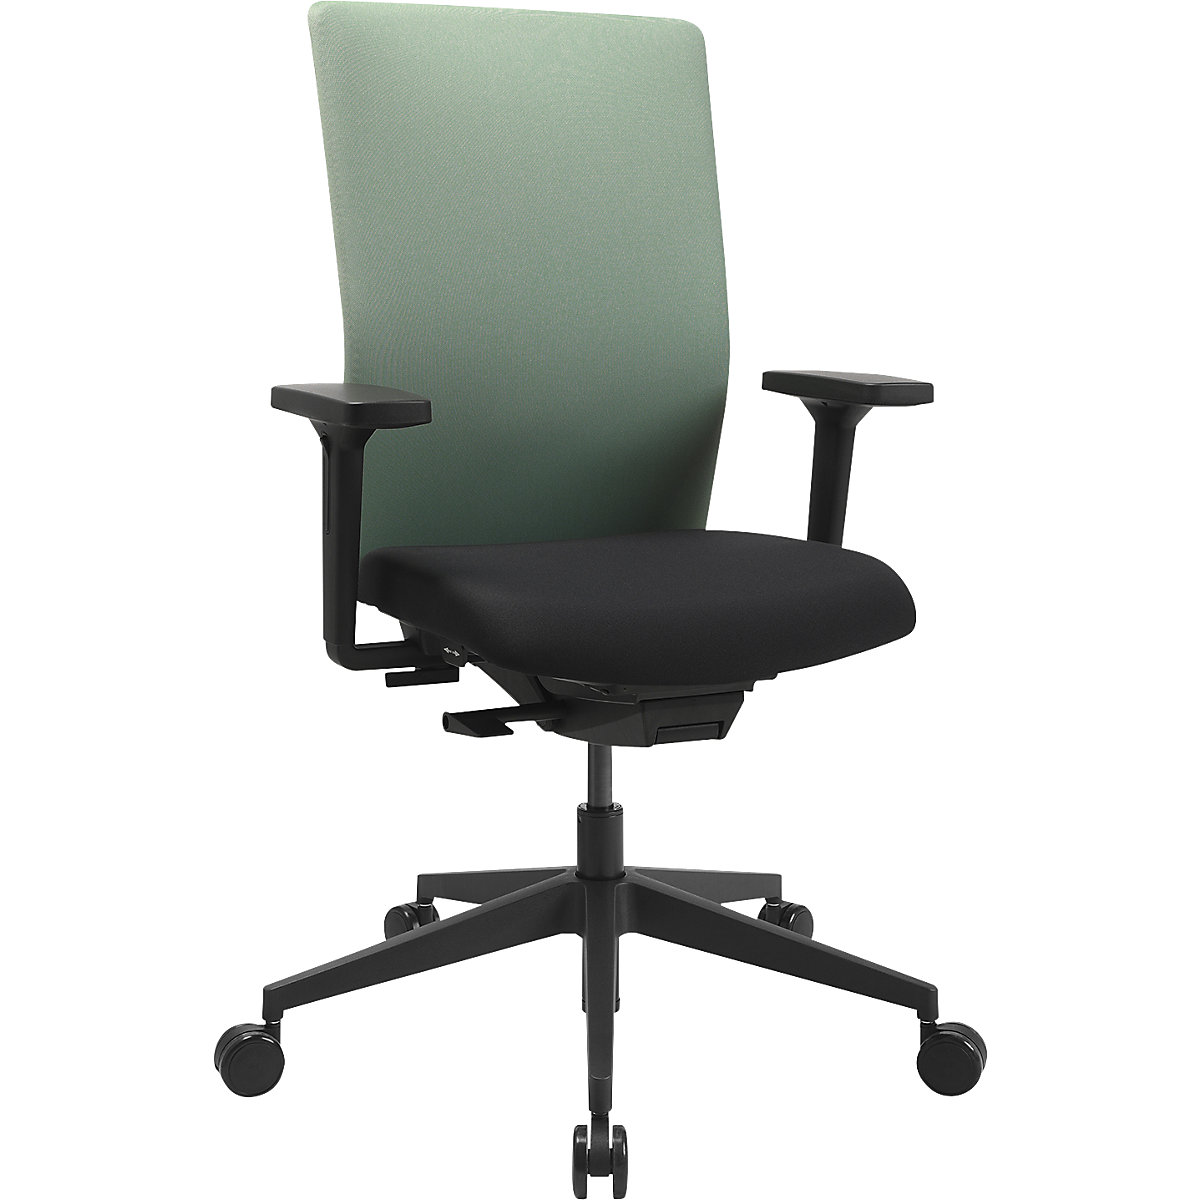 AirWork G office swivel chair - Topstar